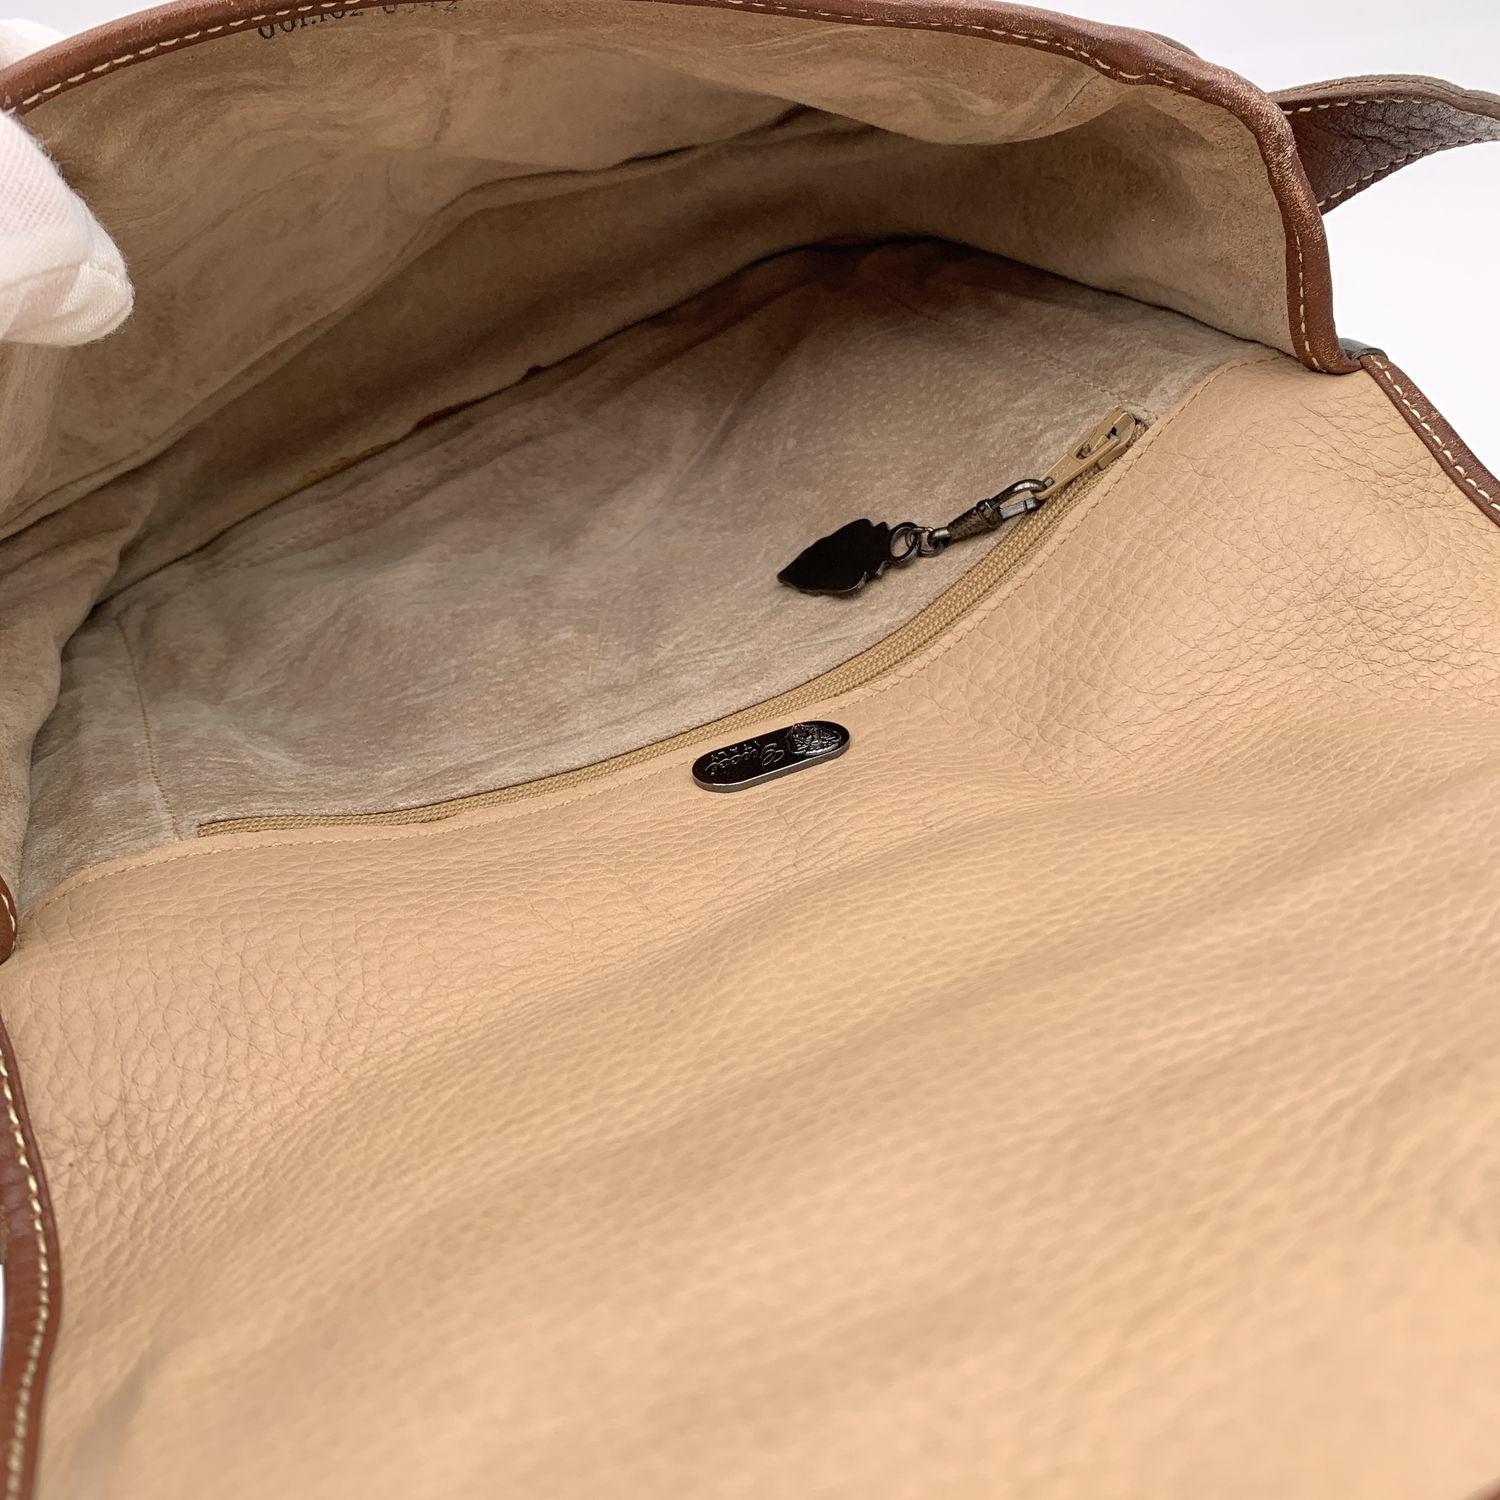 Gucci Vintage Beige and Brown Leather Flap Shoulder Bag For Sale 1